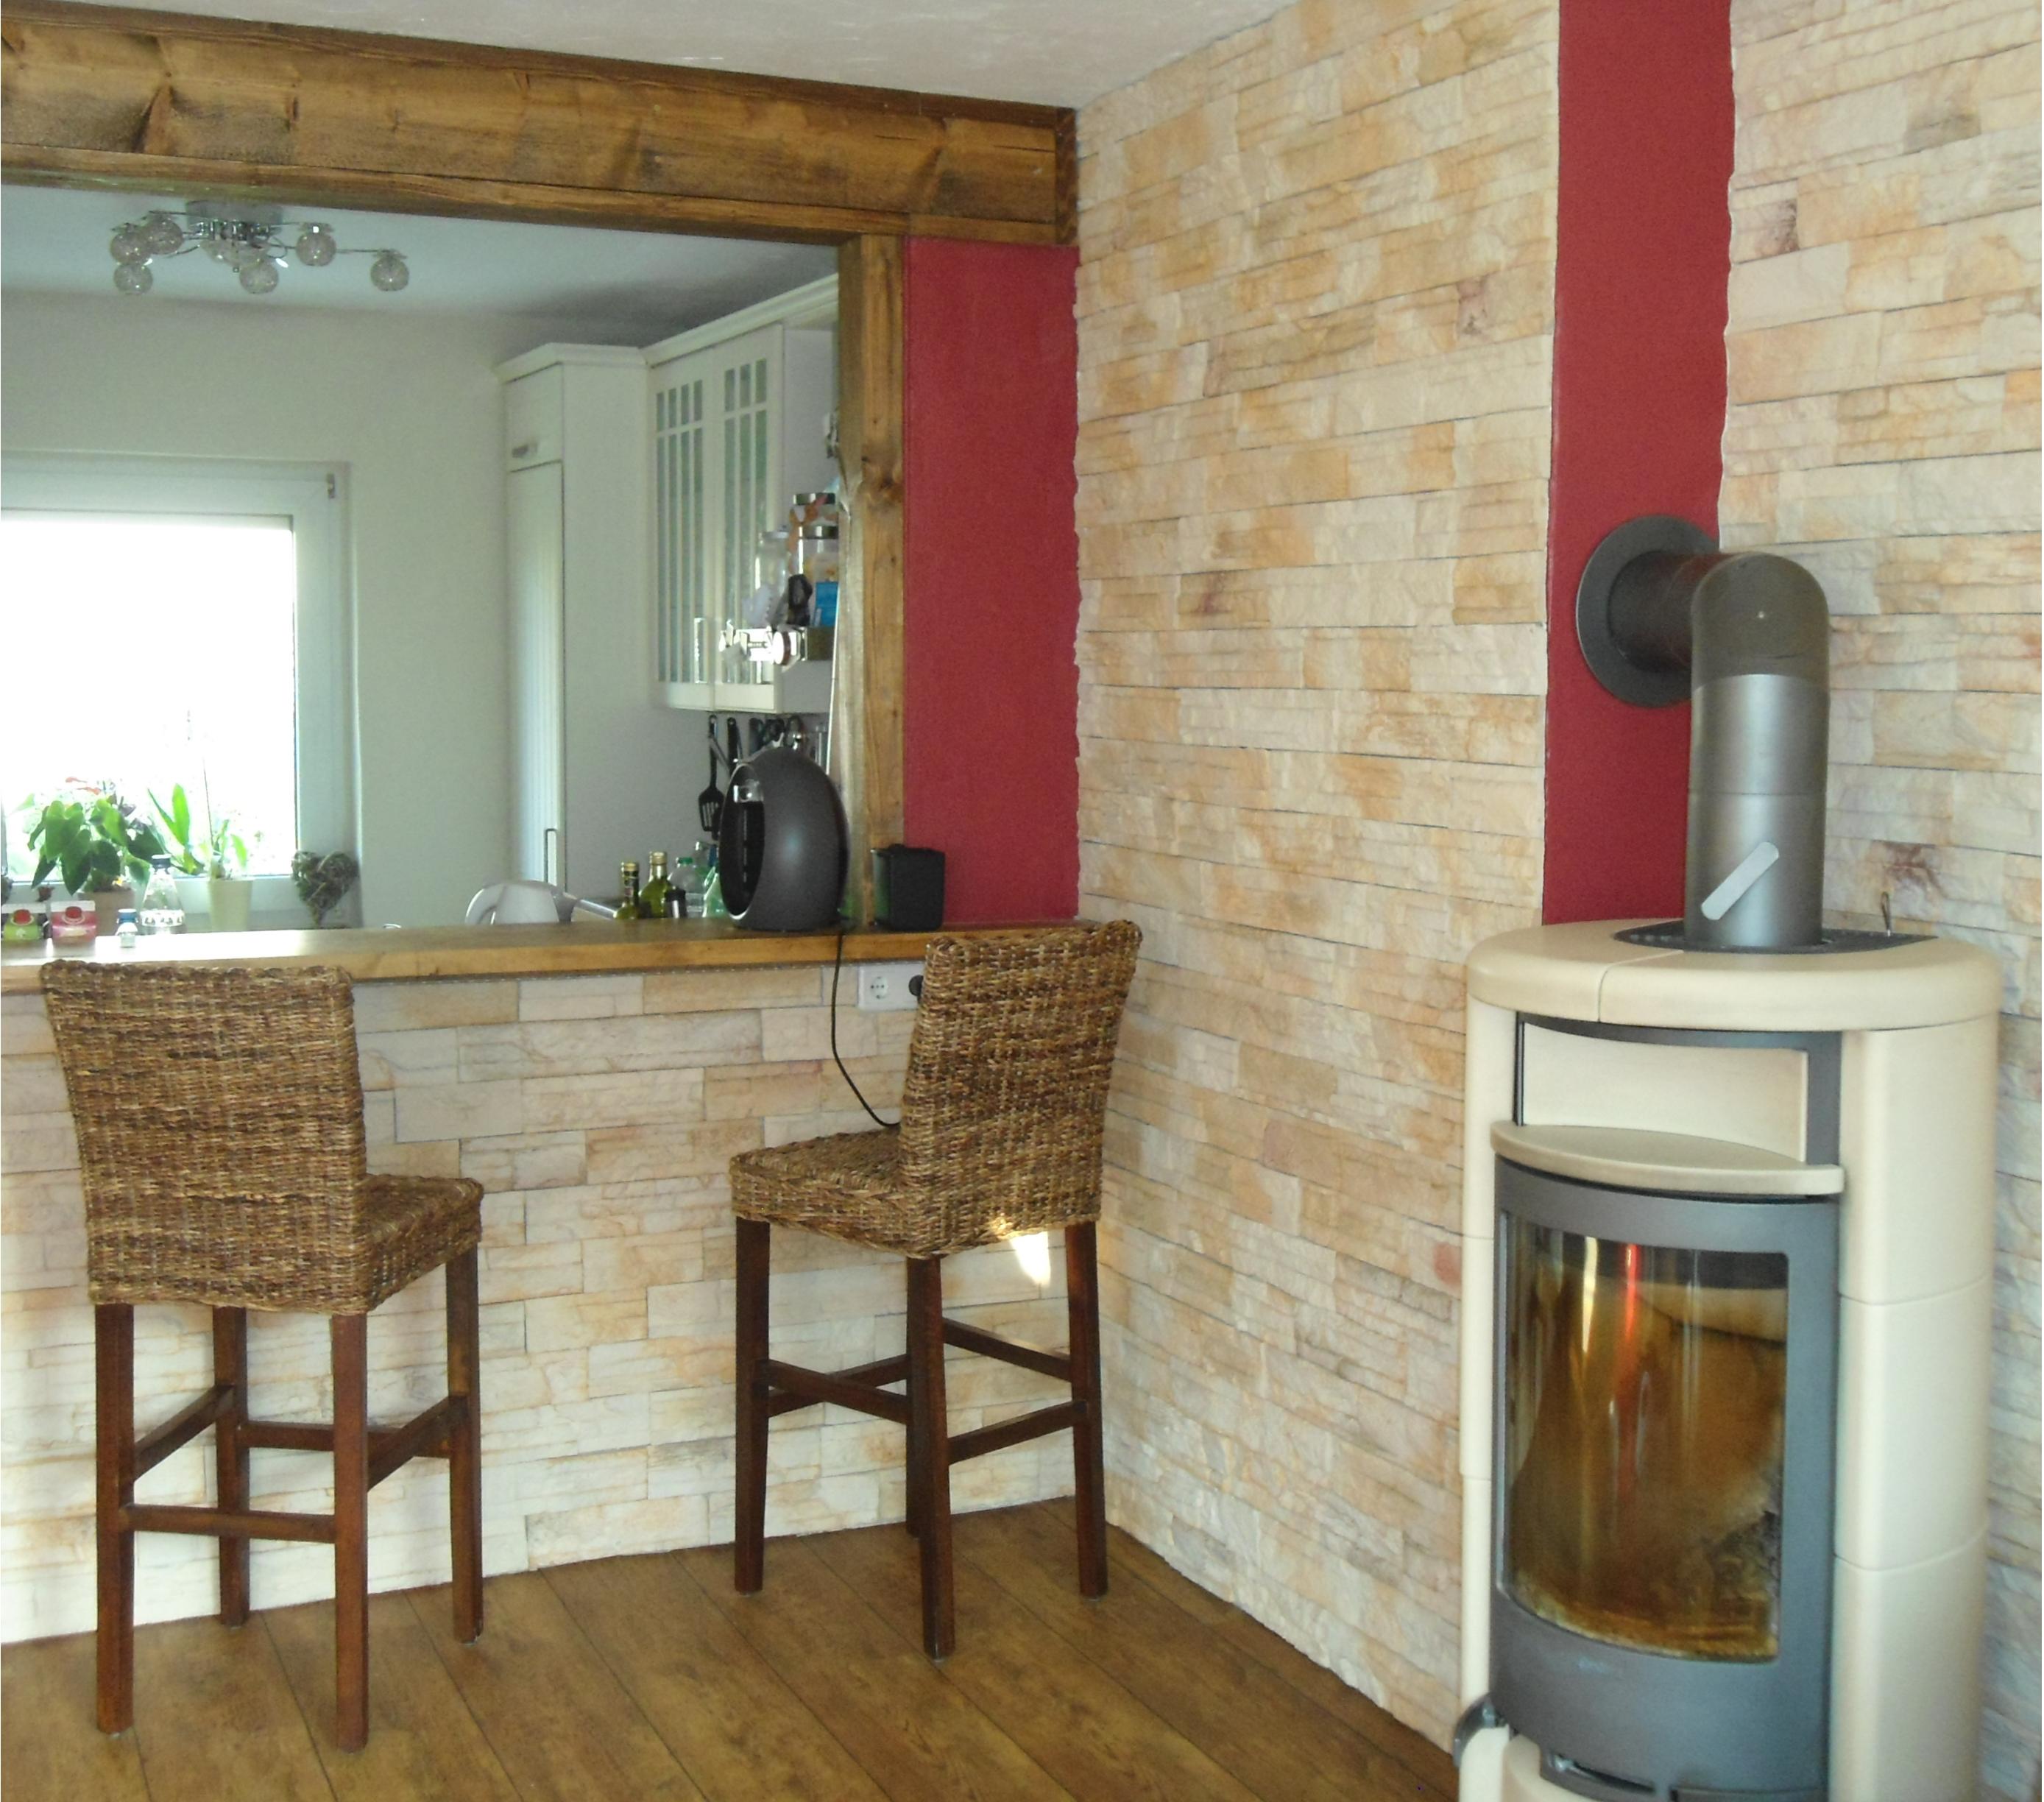 Offene Wohnküche #wohnküche #kamin #steinwand #durchreiche #rotewandfarbe #offeneswohnen ©Chamäleon Painters